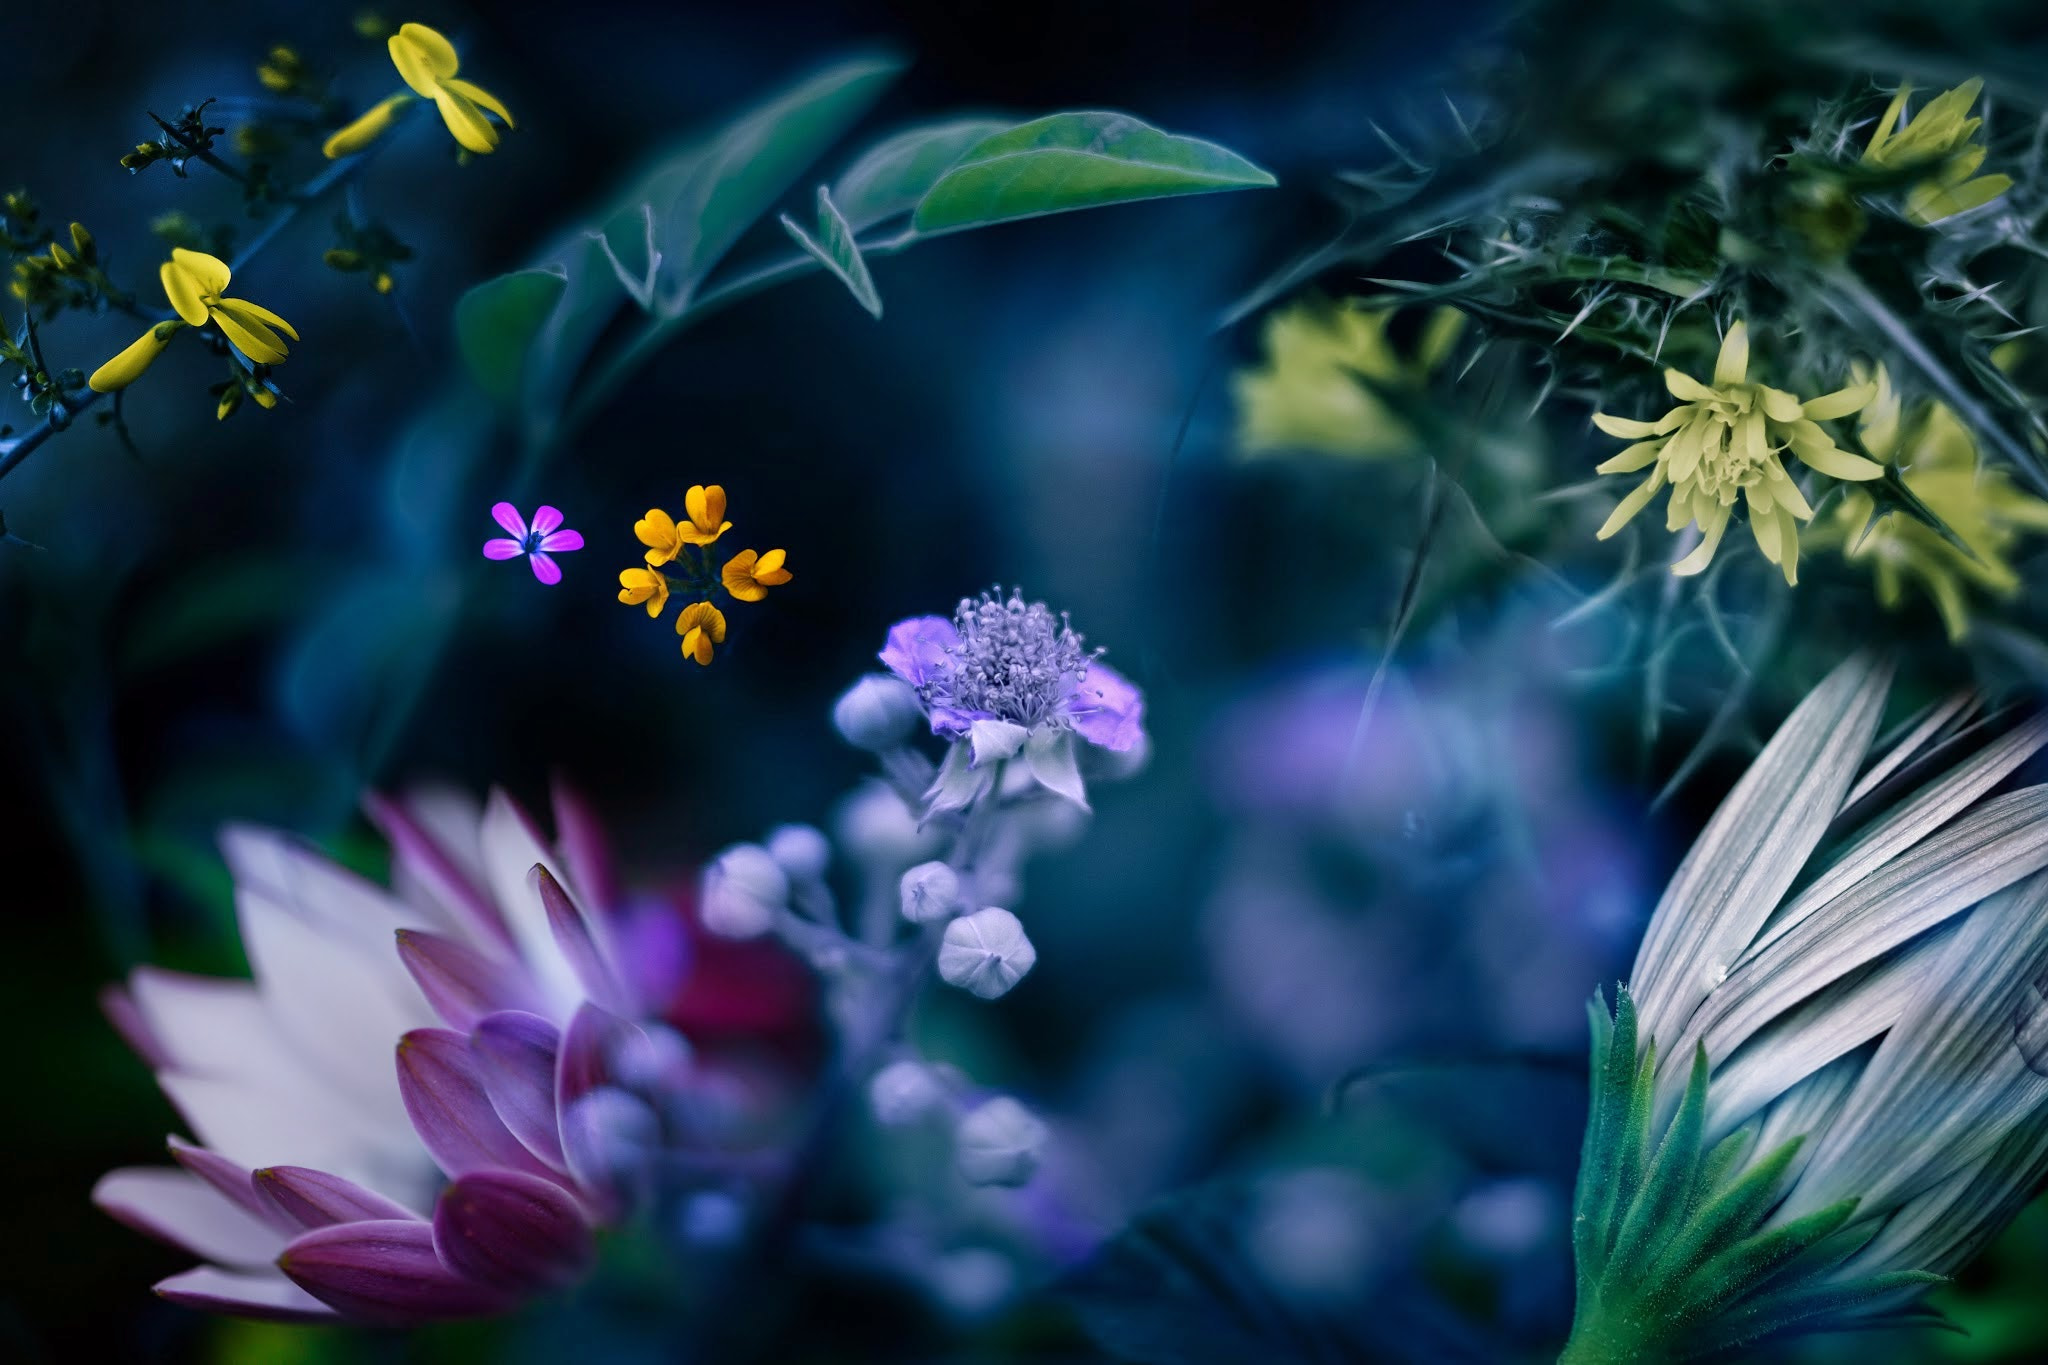 免费照片花卉 - 微距摄影的多样性